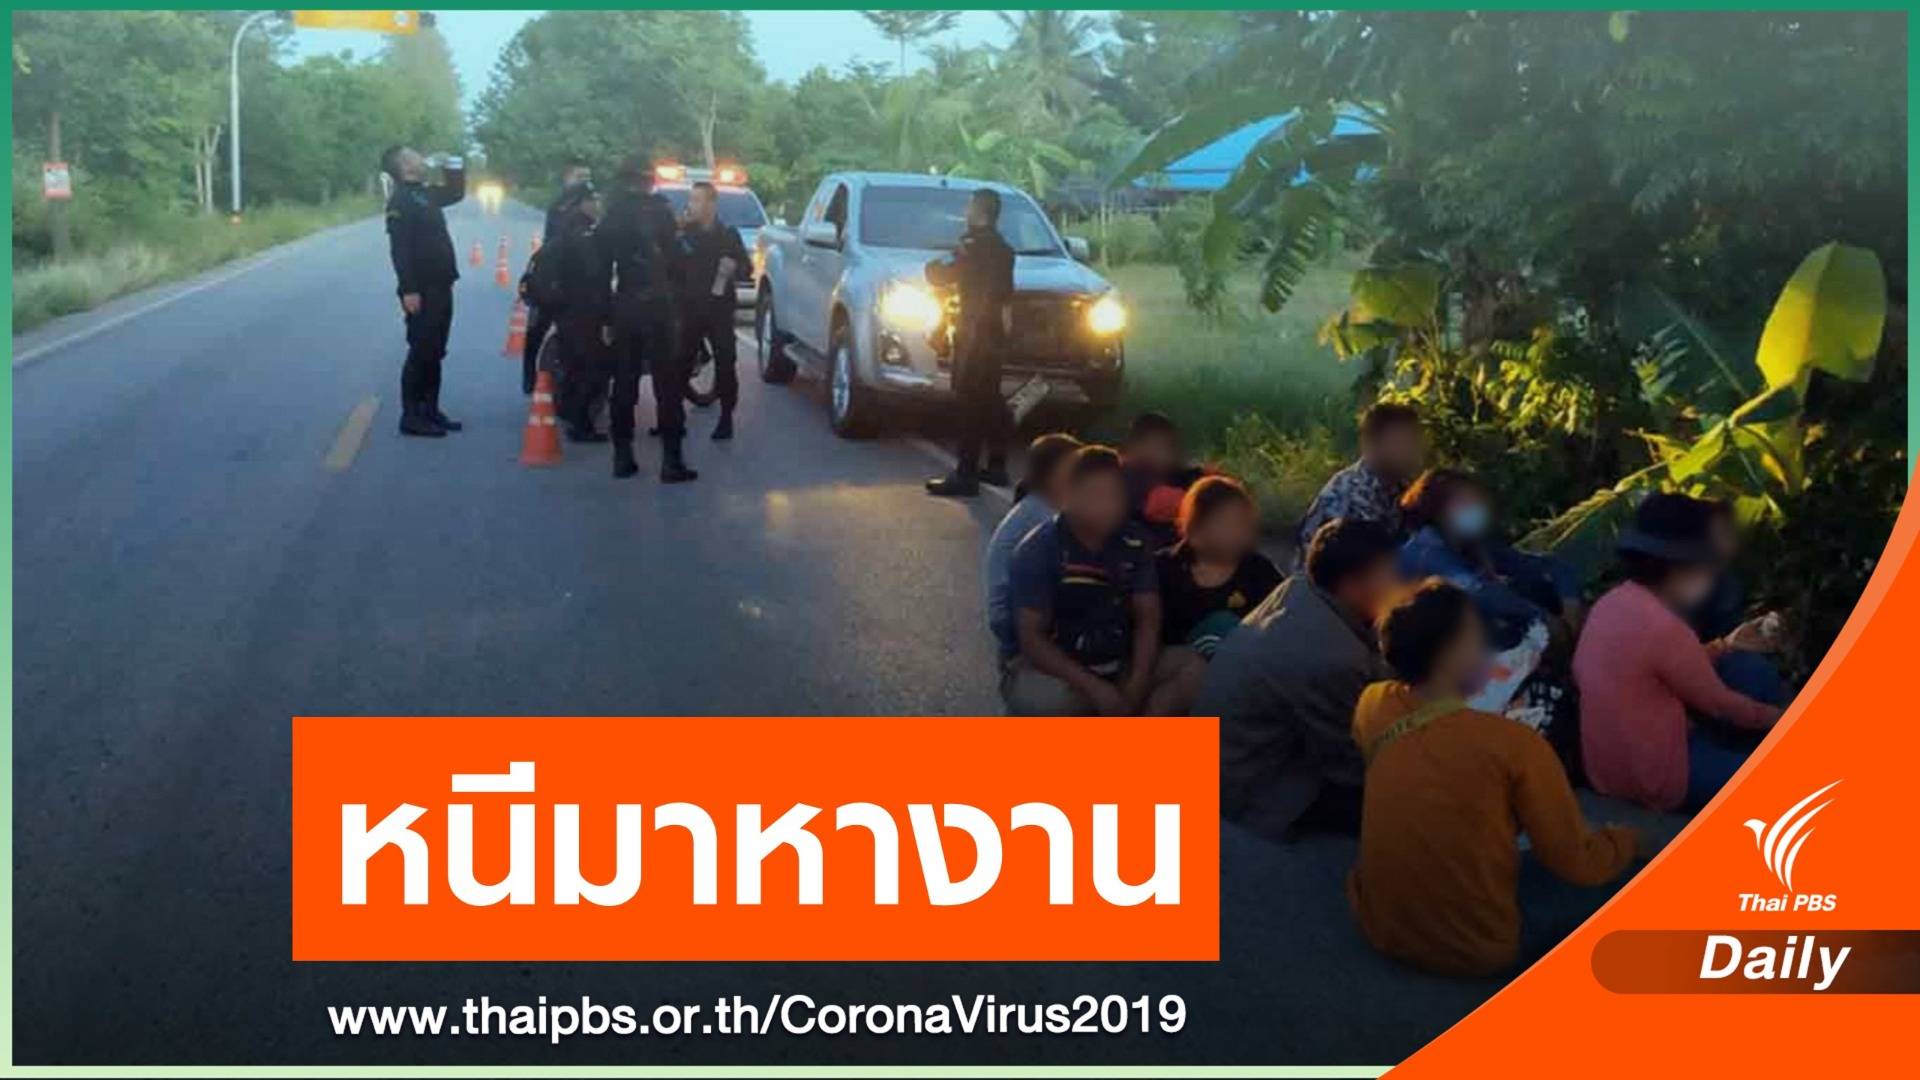 จับชาวกัมพูชา 12 คน หนีวิกฤต COVID-19 มาหางานในไทย